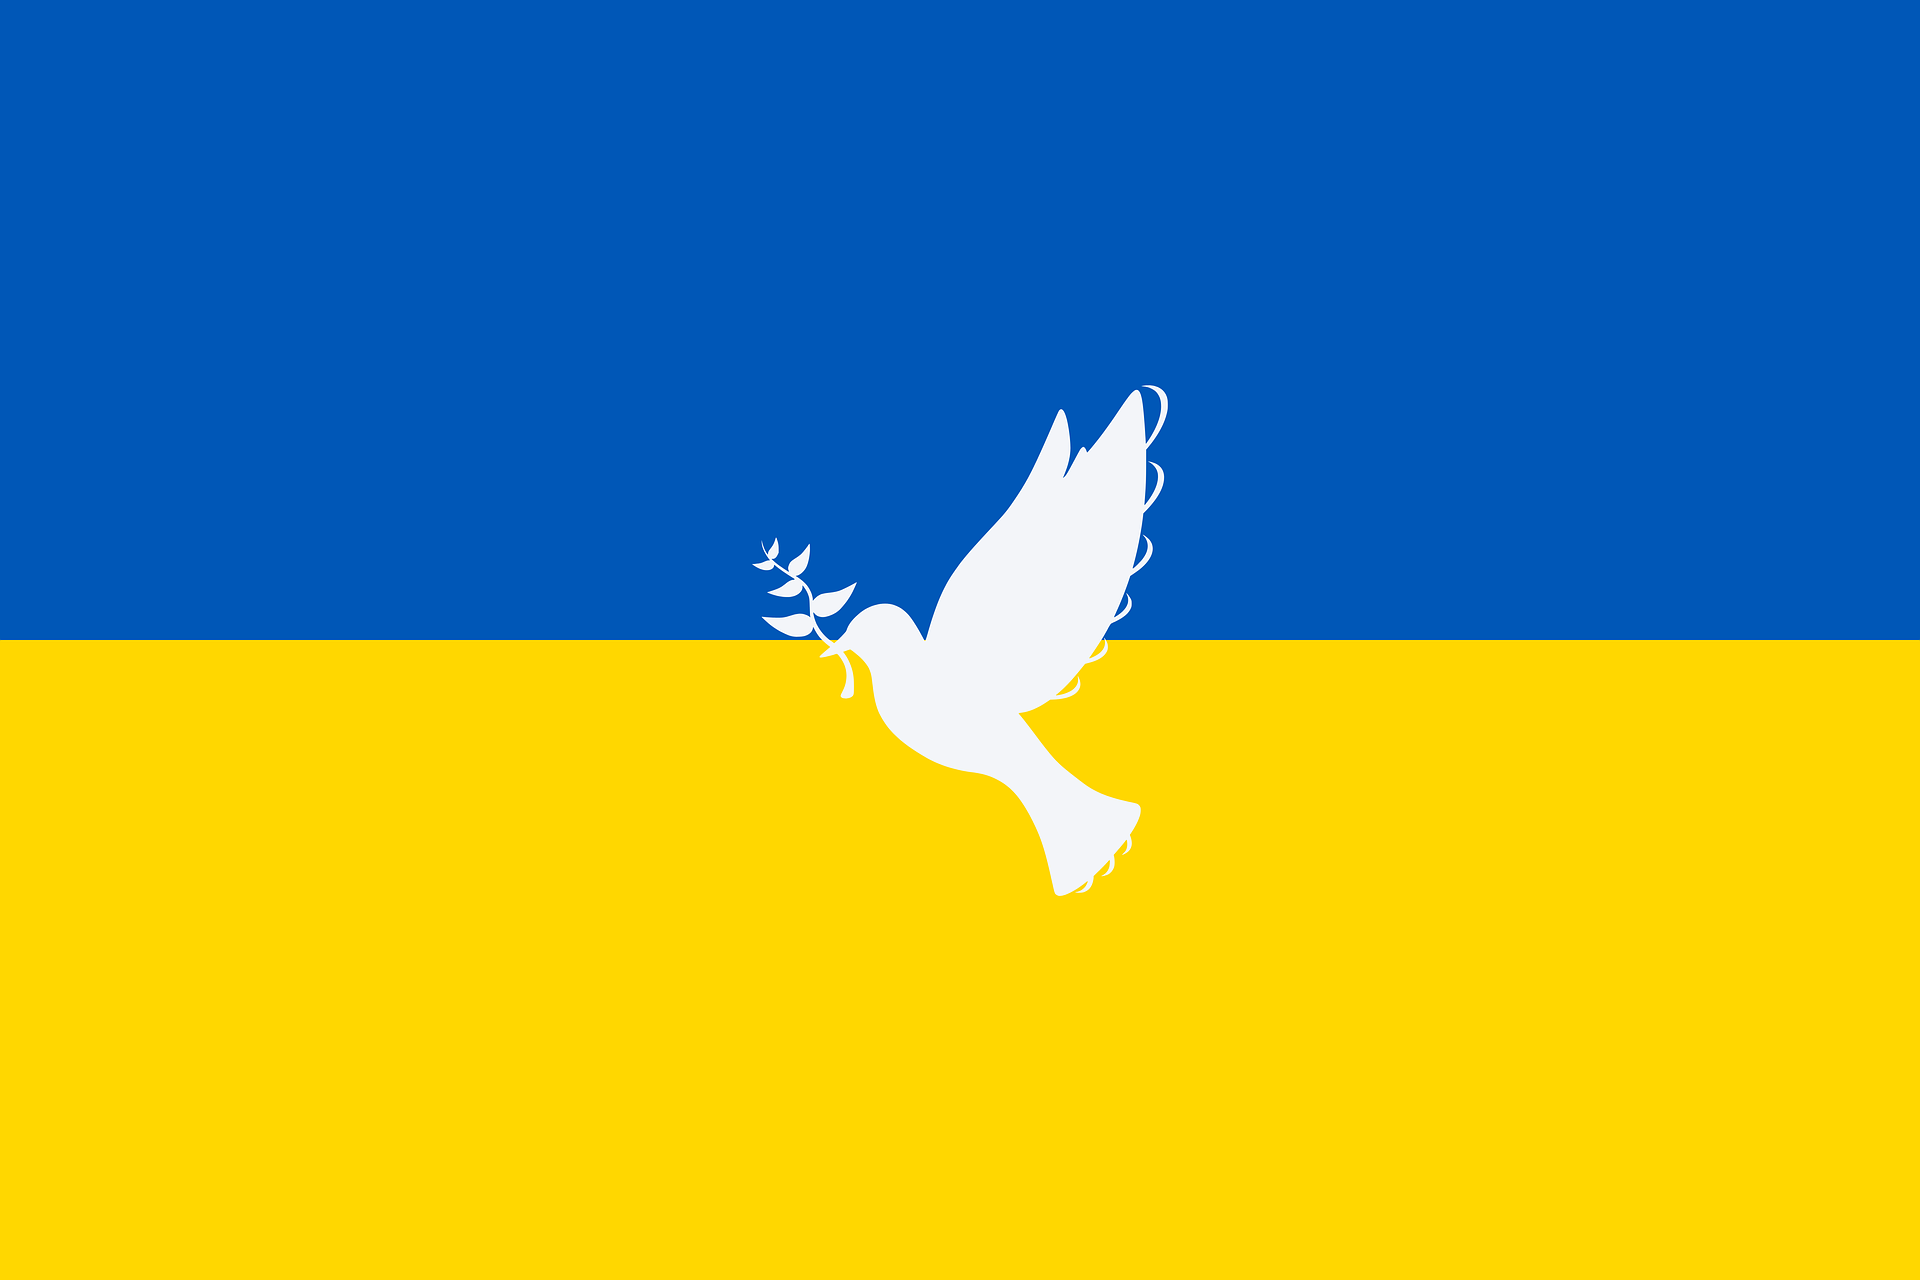 Courriers aux enfants de l’est de l’Ukraine (action de solidarité)